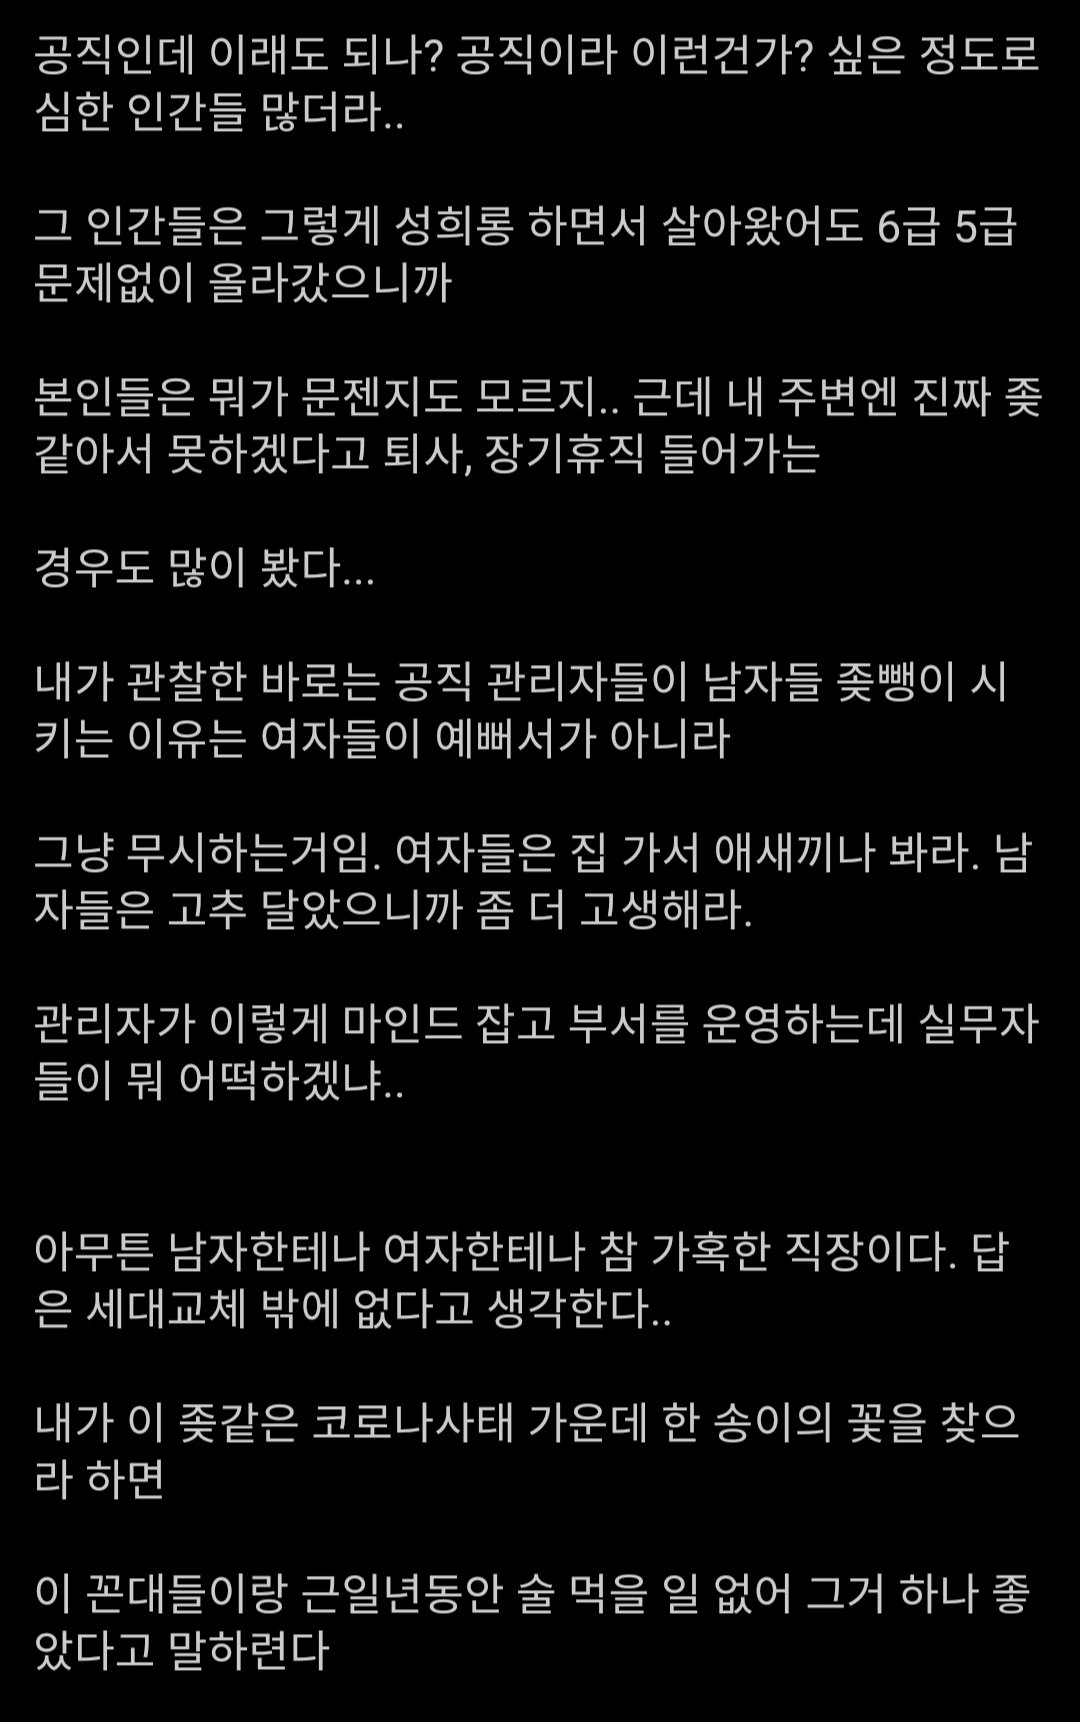 "본인 9급 현직인데 소신발언함".jpg